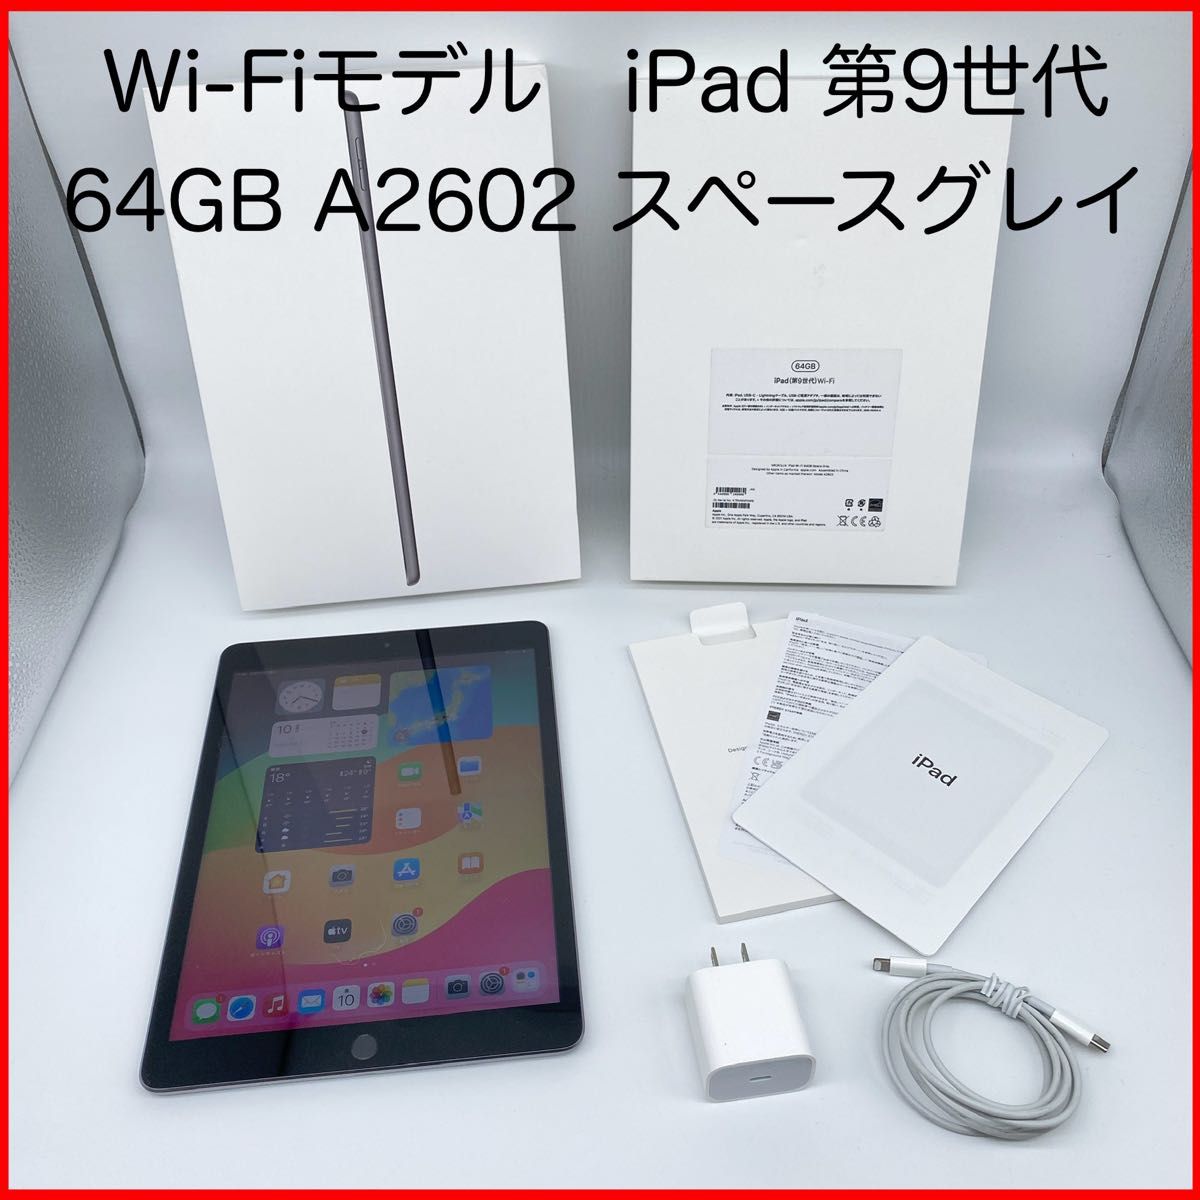 即配【美品】Wi-Fiモデル Apple iPad 第9世代 64GB A2602 MK2K3J/A スペースグレイ 送料無料